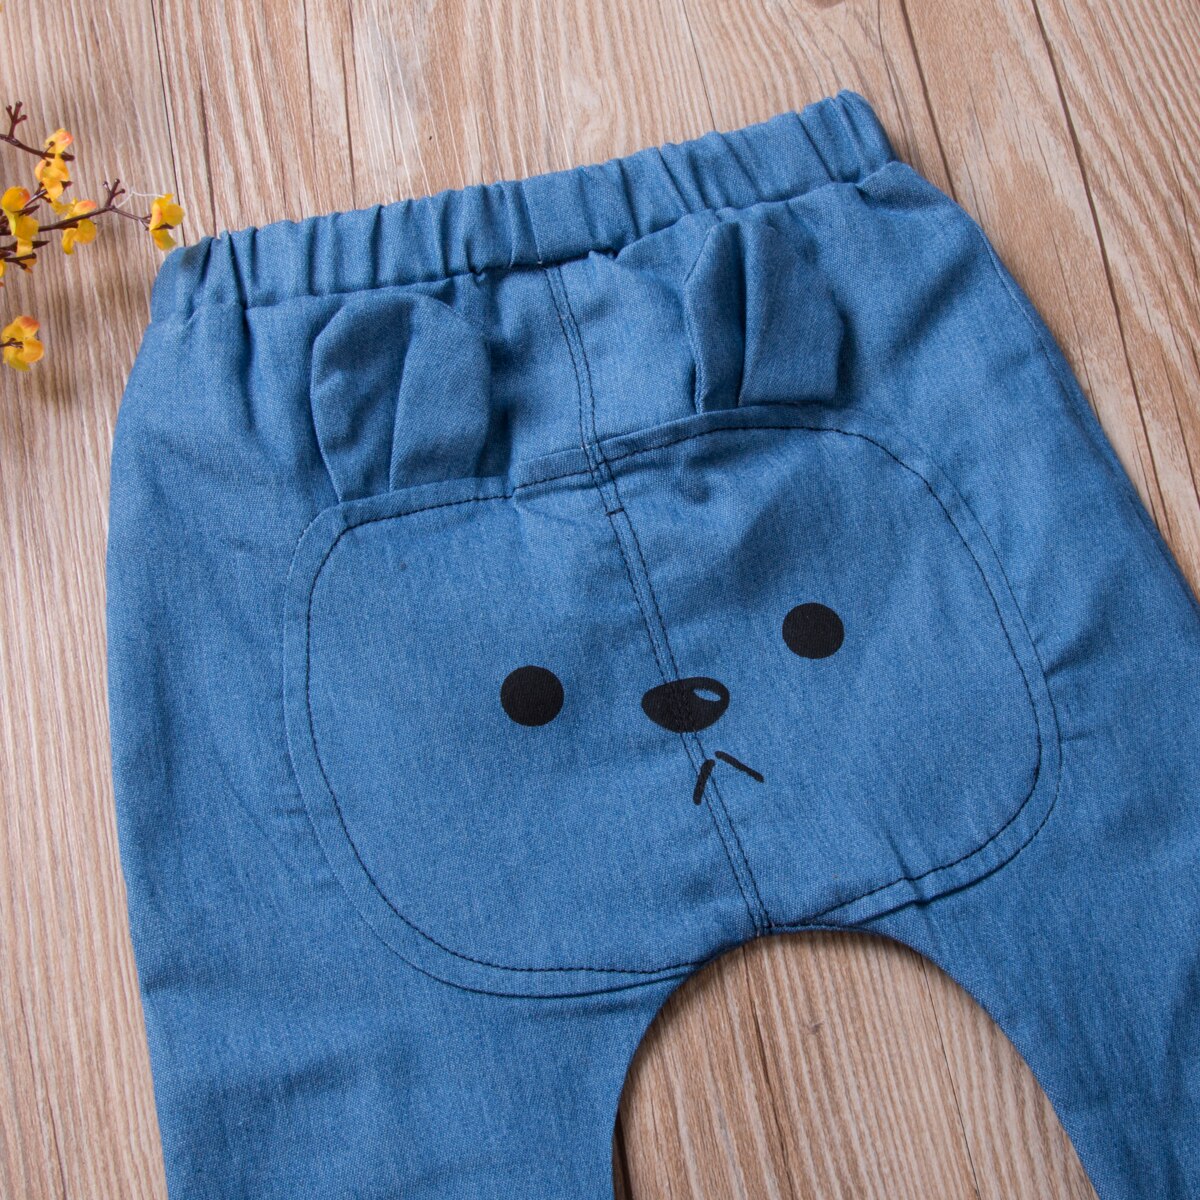 Toddler baby piger drenge 0-3t tegneserie print lange bukser harembukser blå denim elastisk talje bukser underdele leggings sweatpants